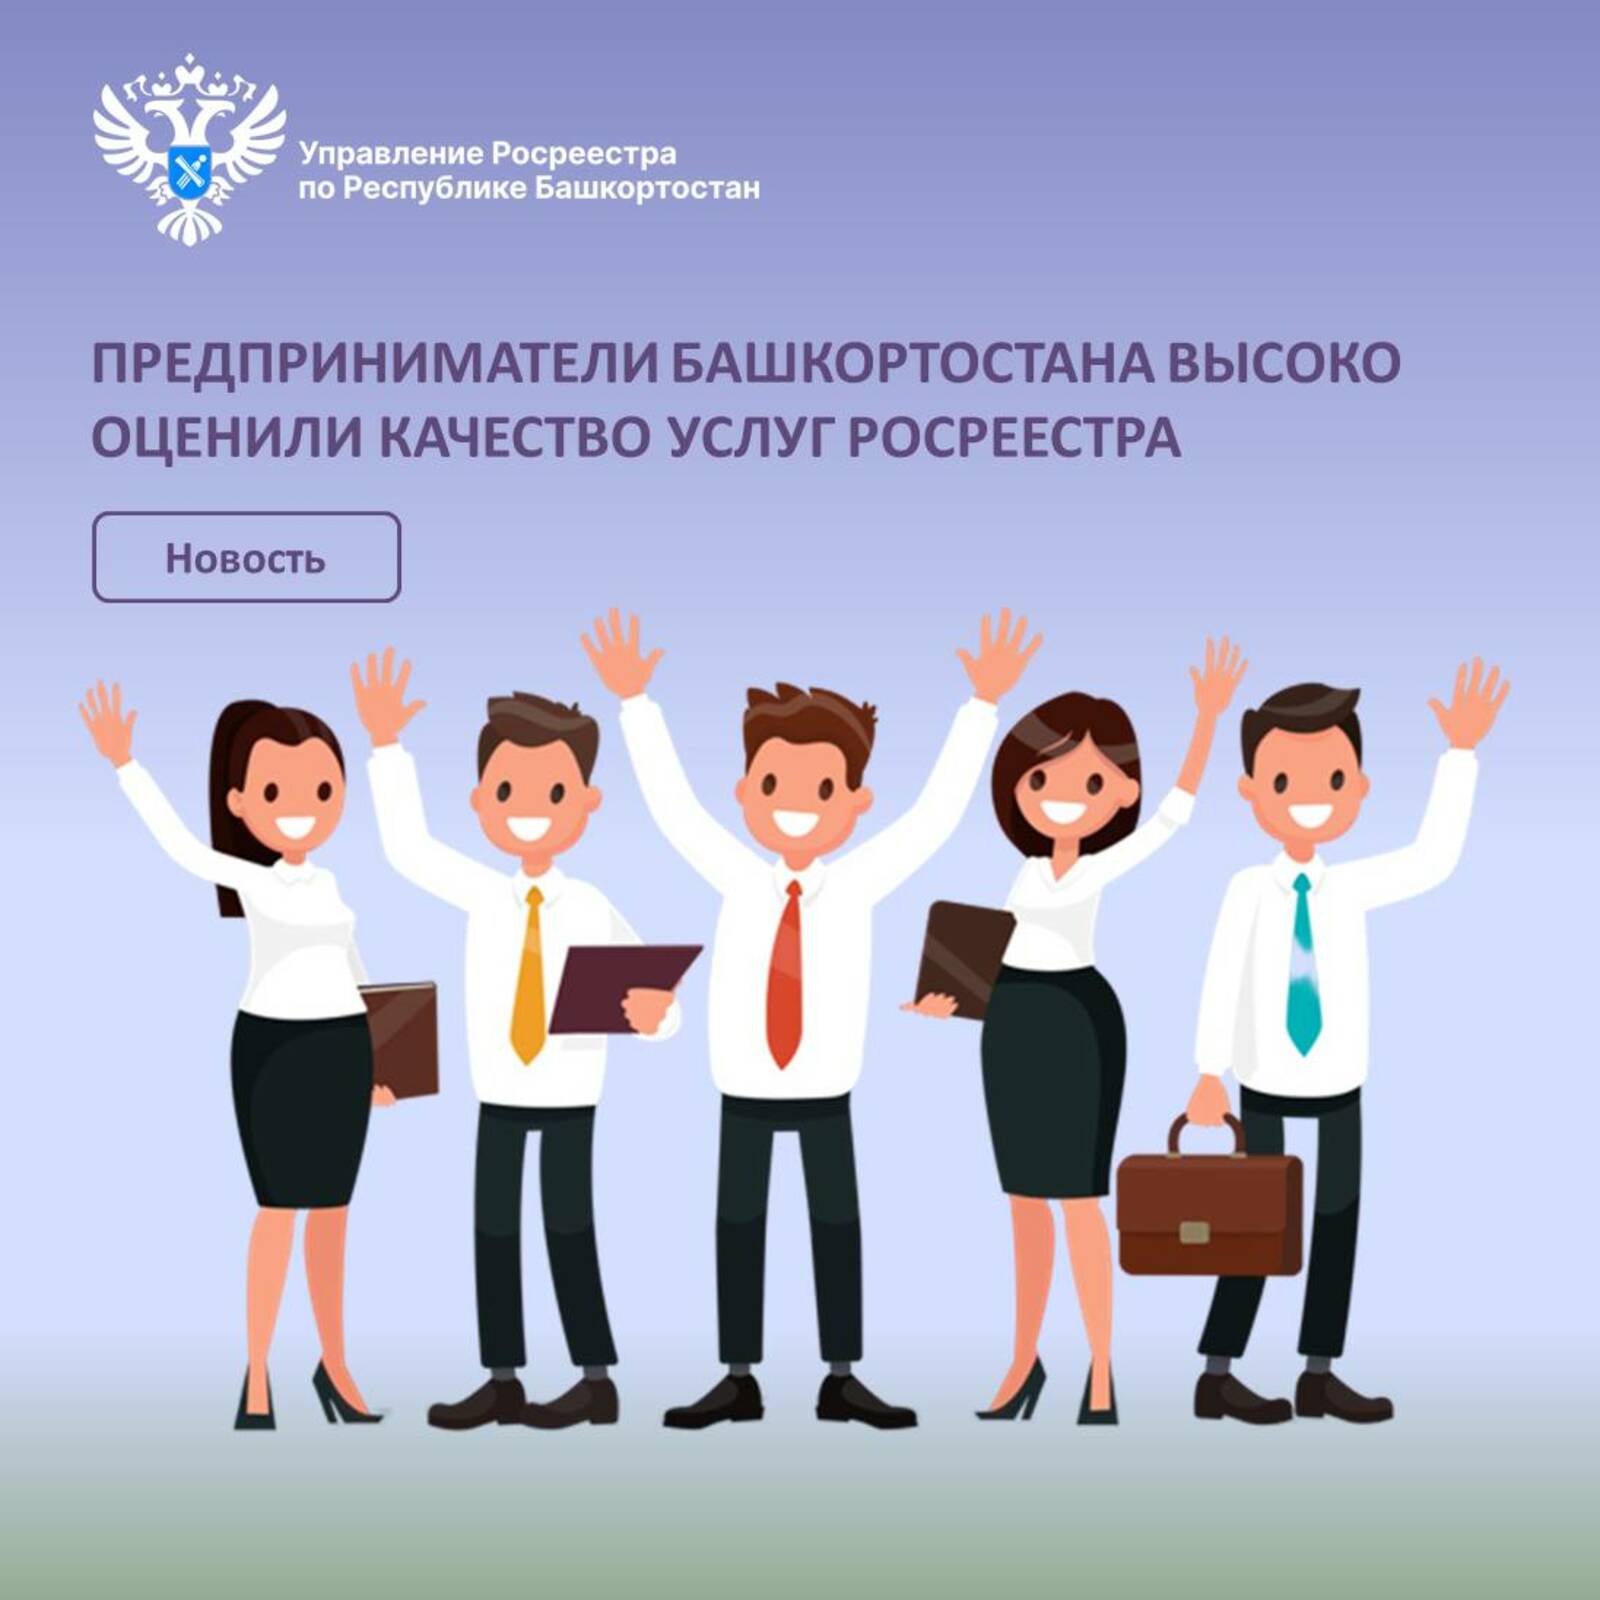 Предприниматели Башкортостана высоко оценили качество услуг Росреестра